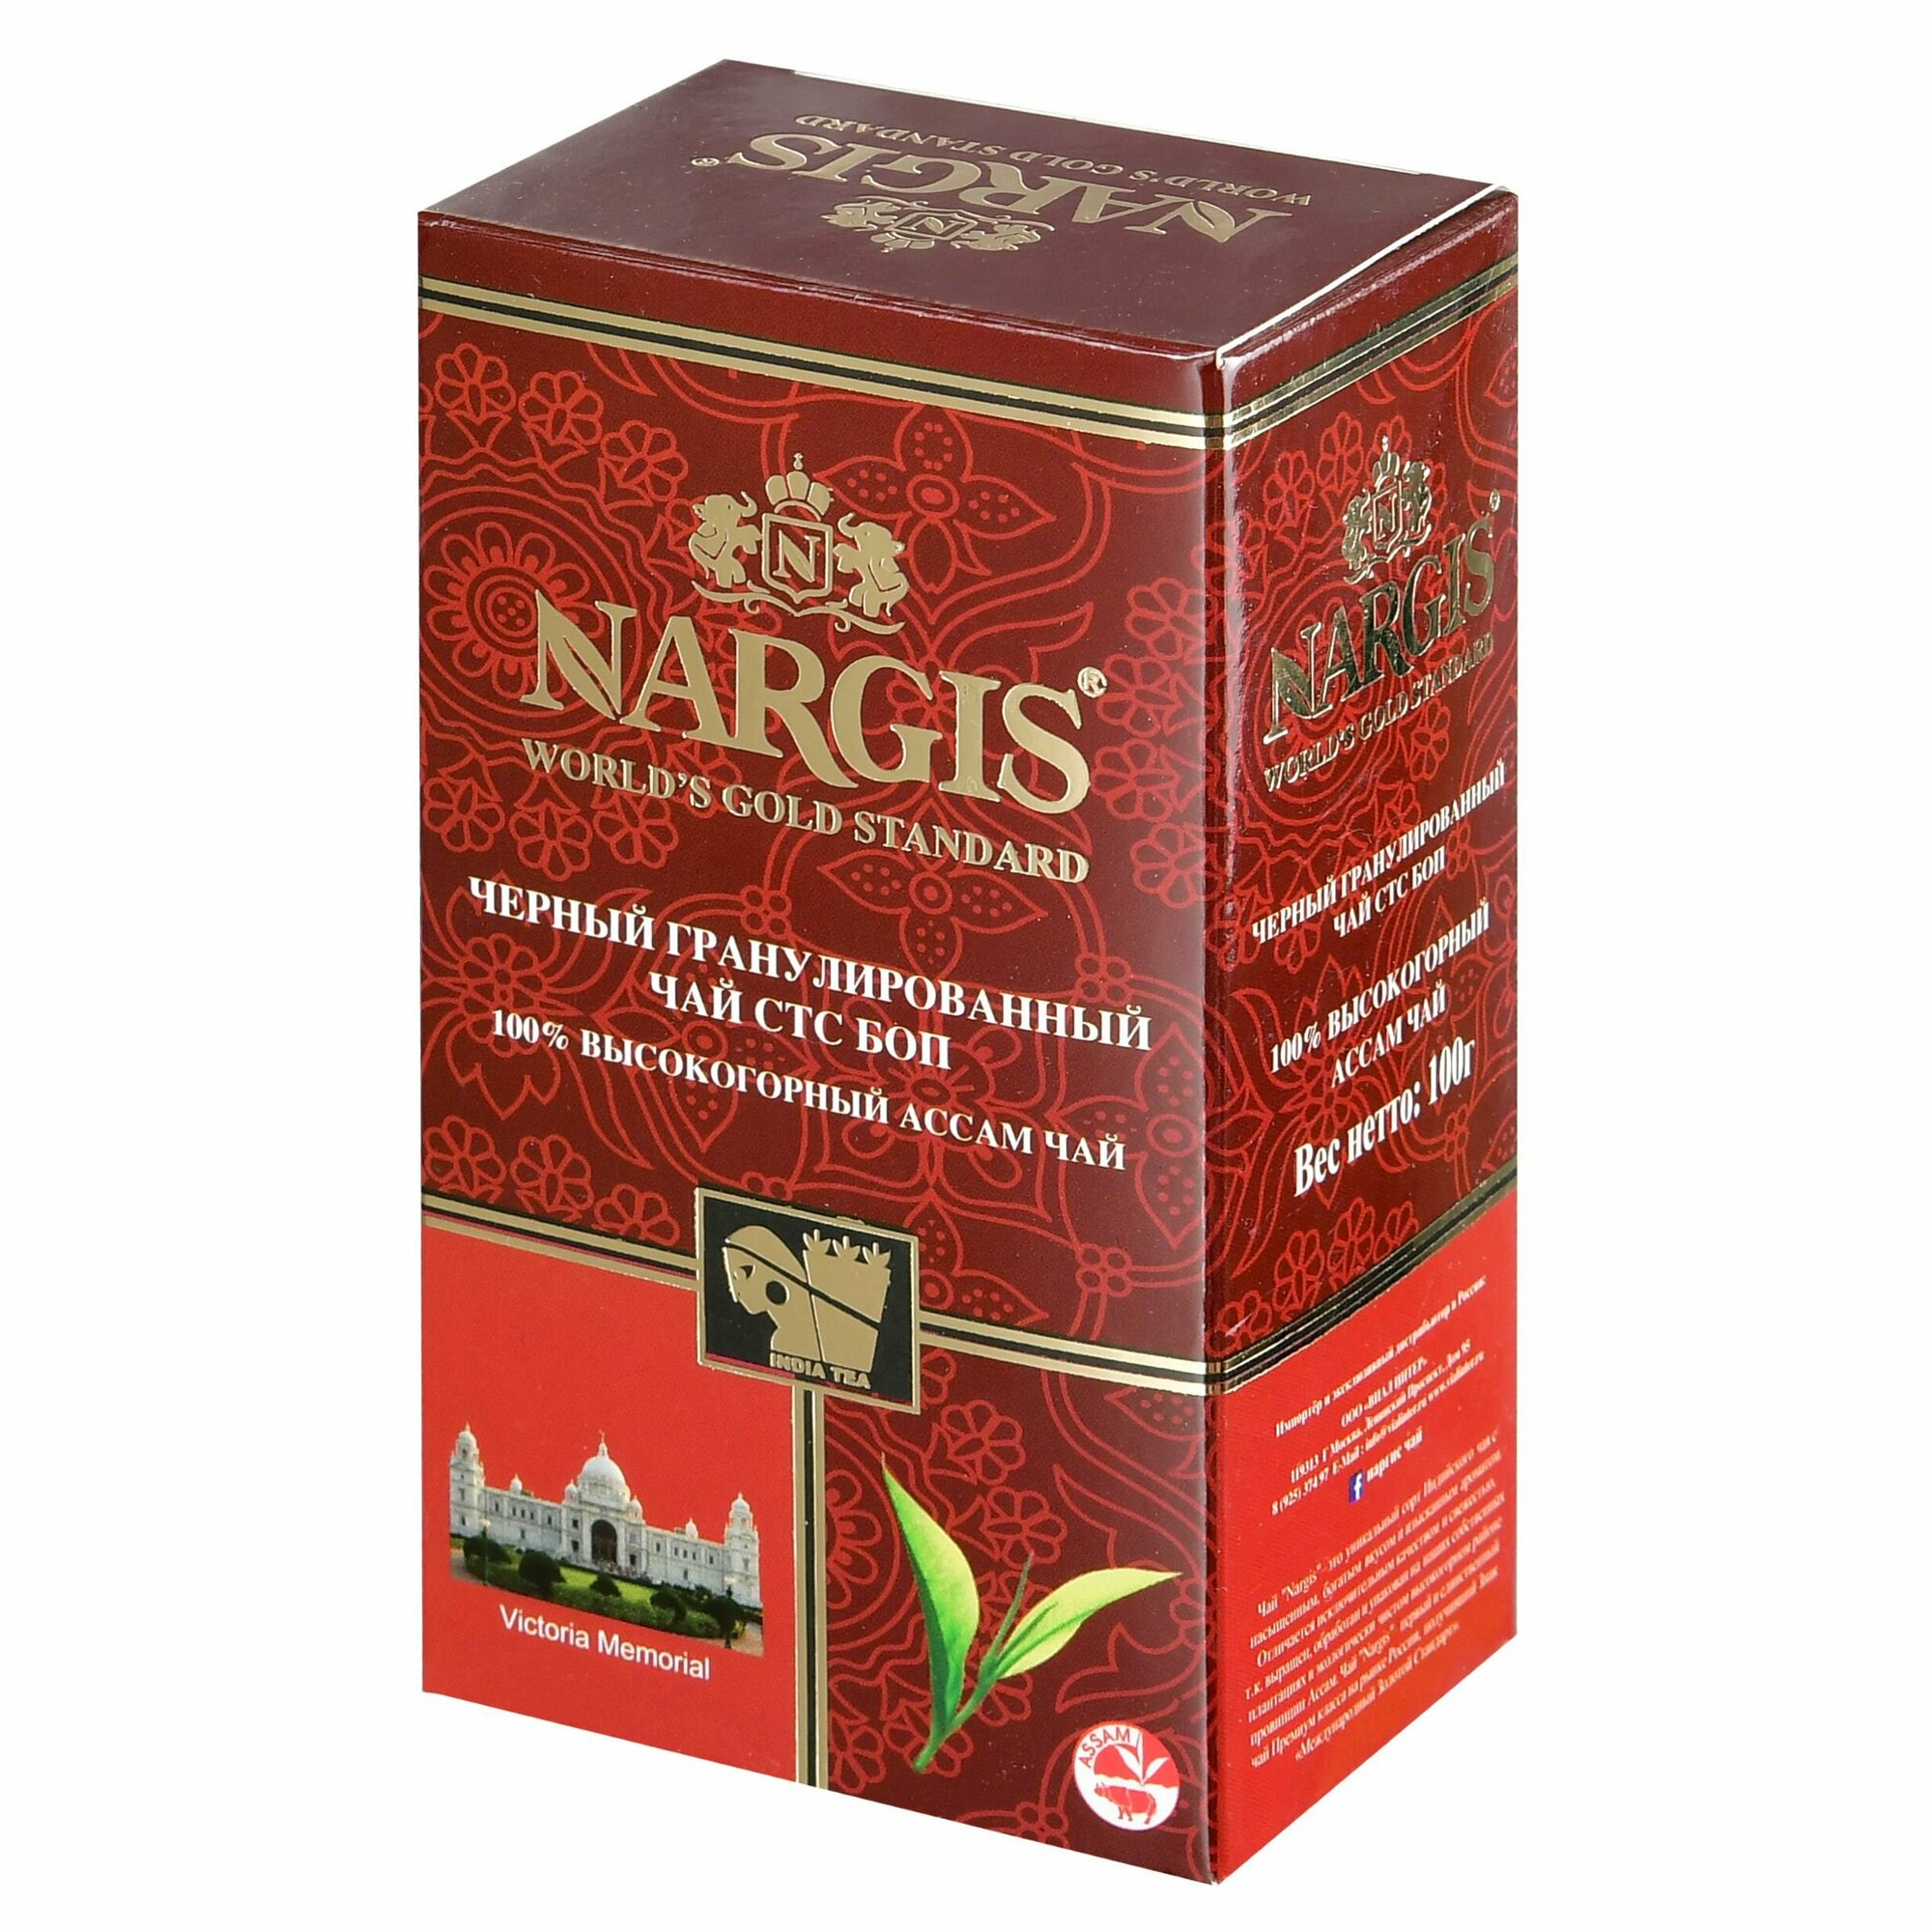 ЧАЙ черный Nargis / Наргис BOP гранулированный 100 гр.